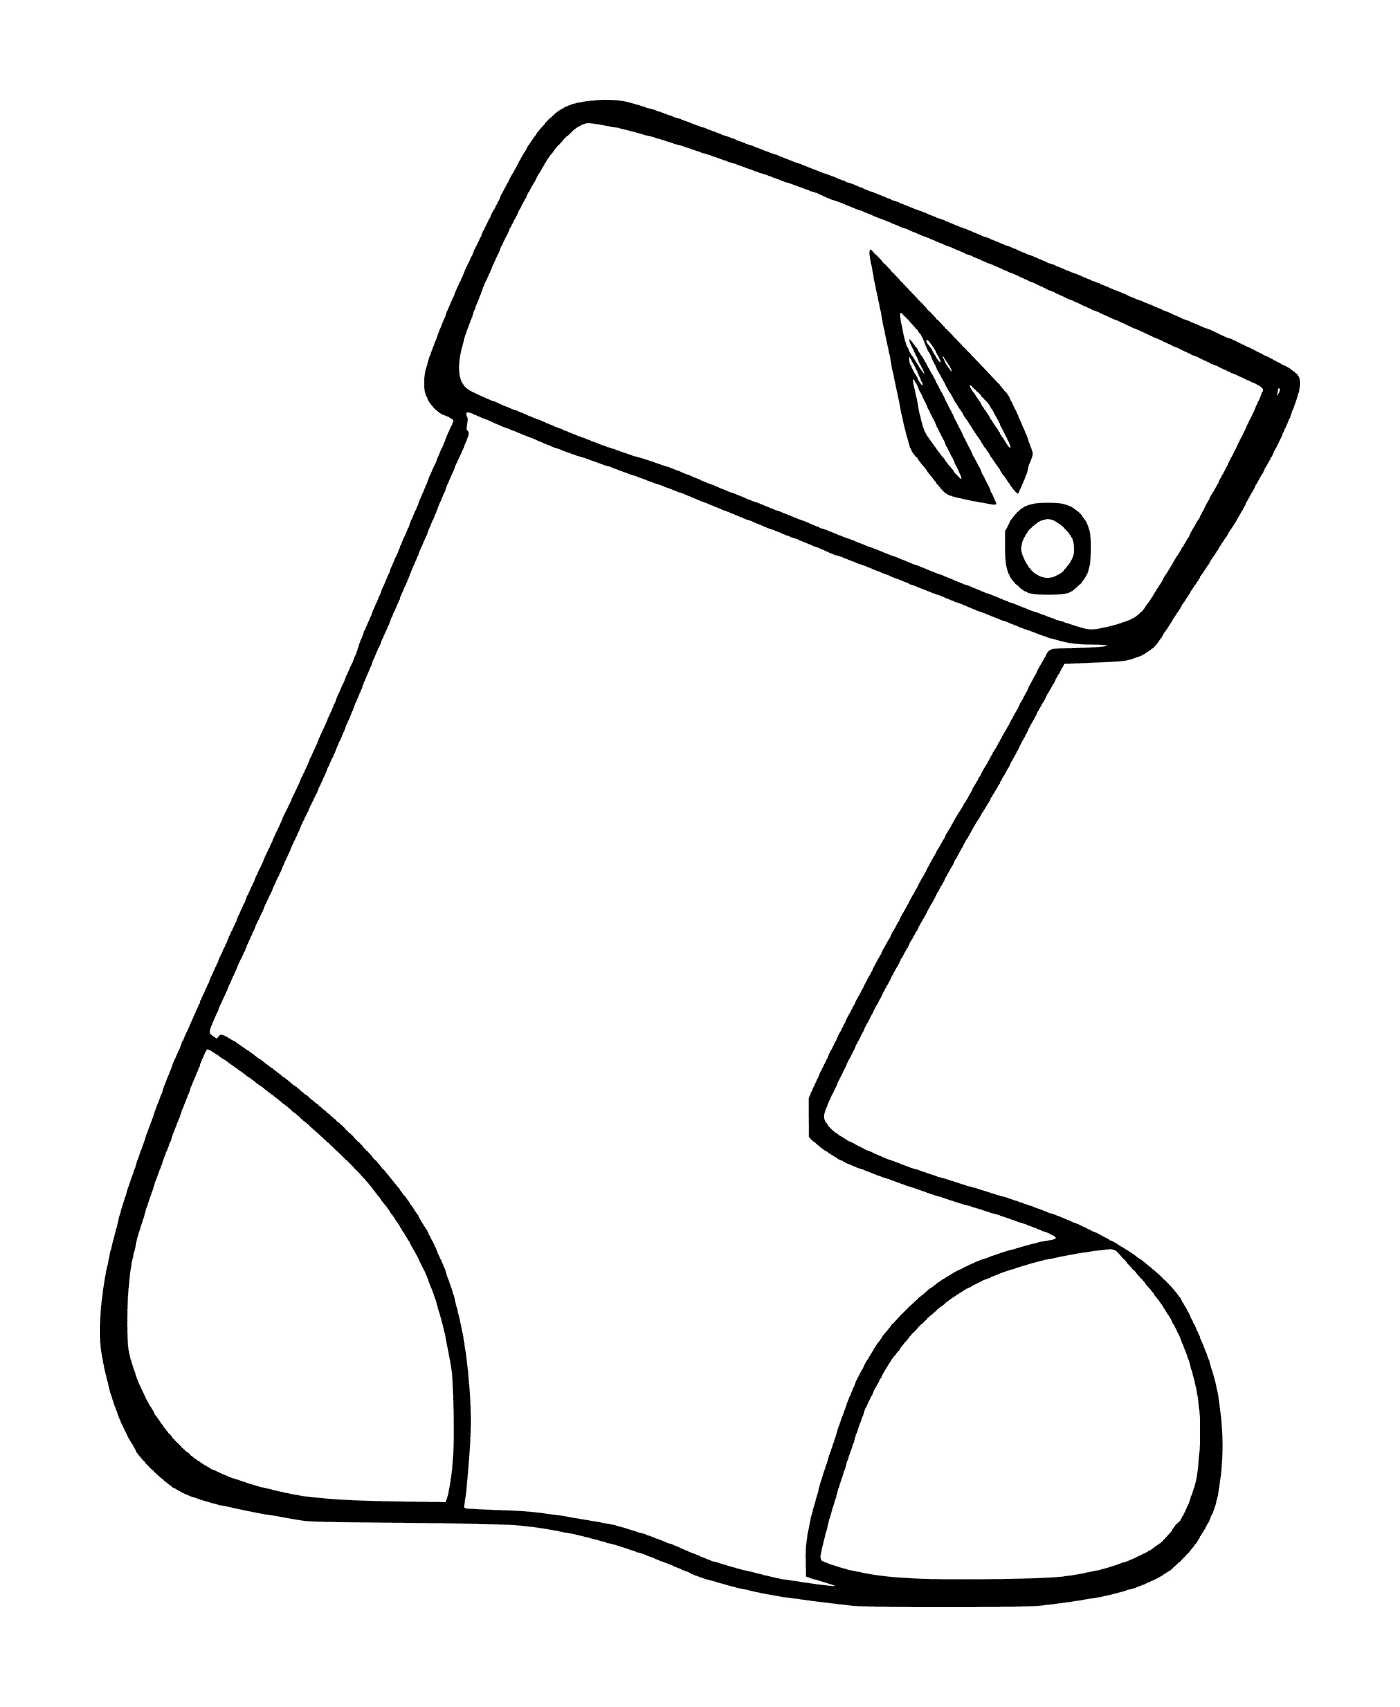  壁炉的圣诞丝袜 